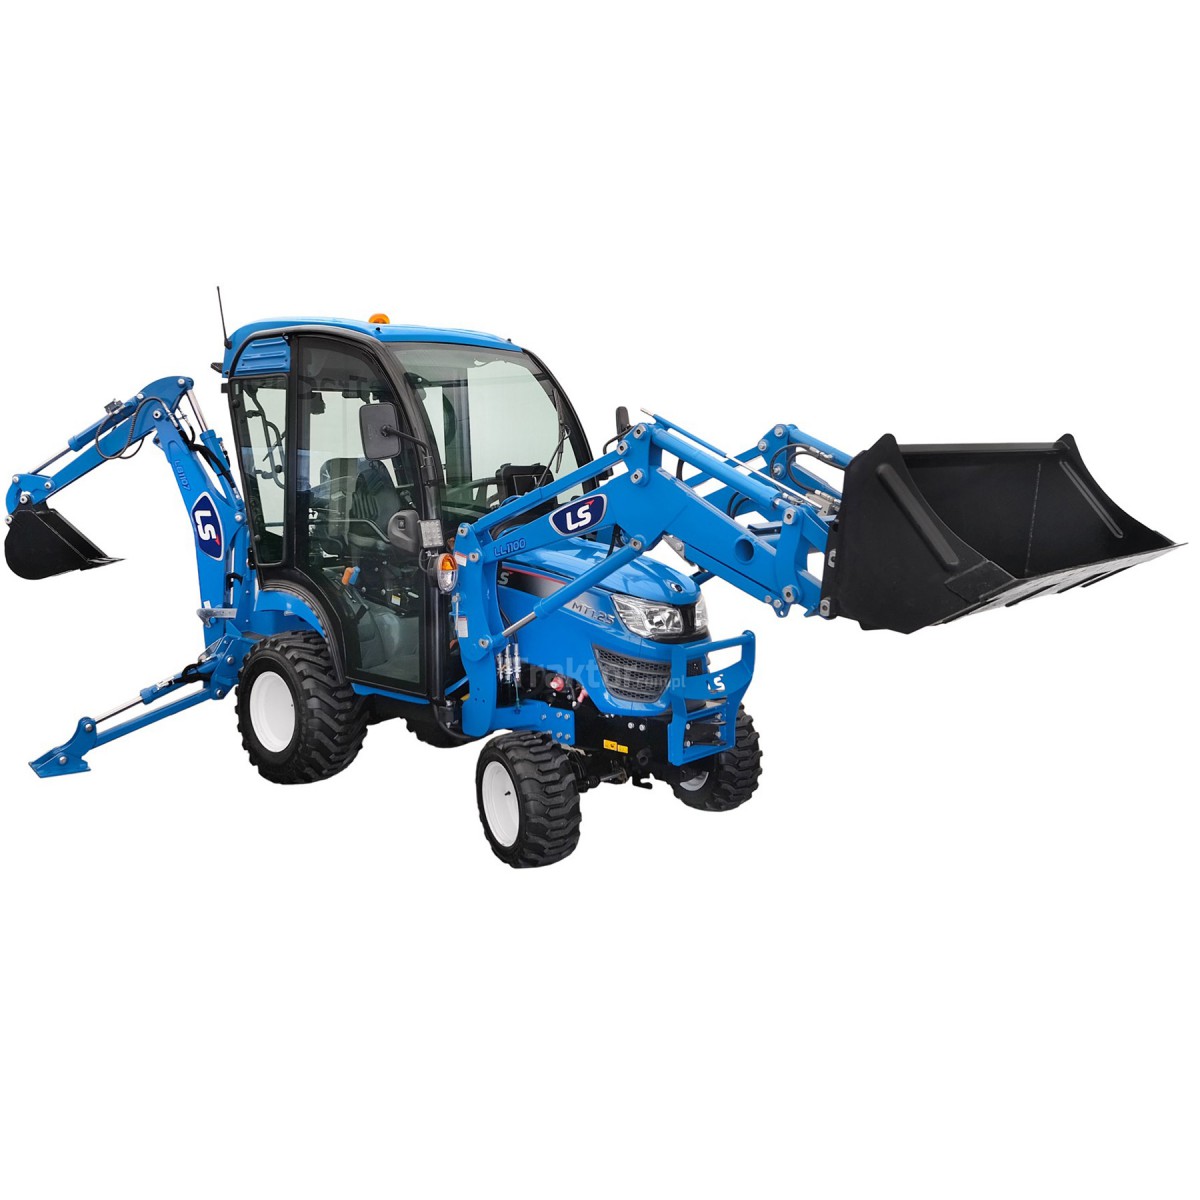 Tractor LS MT1.25 4x4 - 24,7 CV / IND / CAB + Excavadora LB1107 + Cargadora TUR LL1100